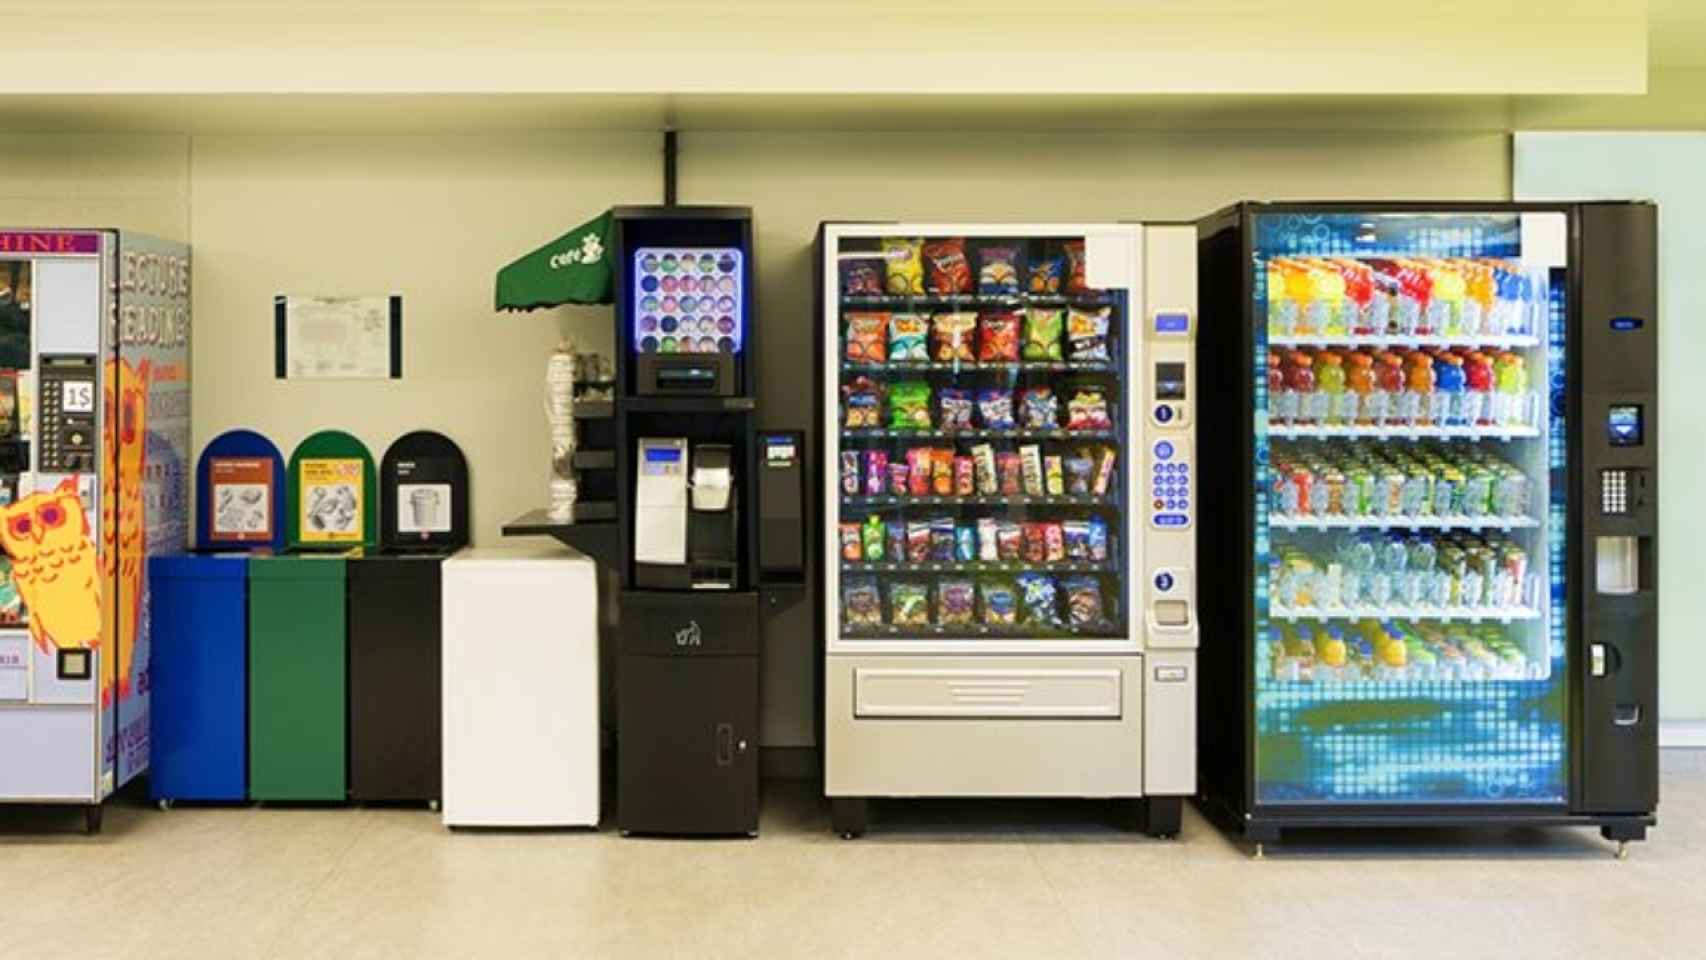 La actividad de las máquinas de vending cayó hasta un 80% por el teletrabajo